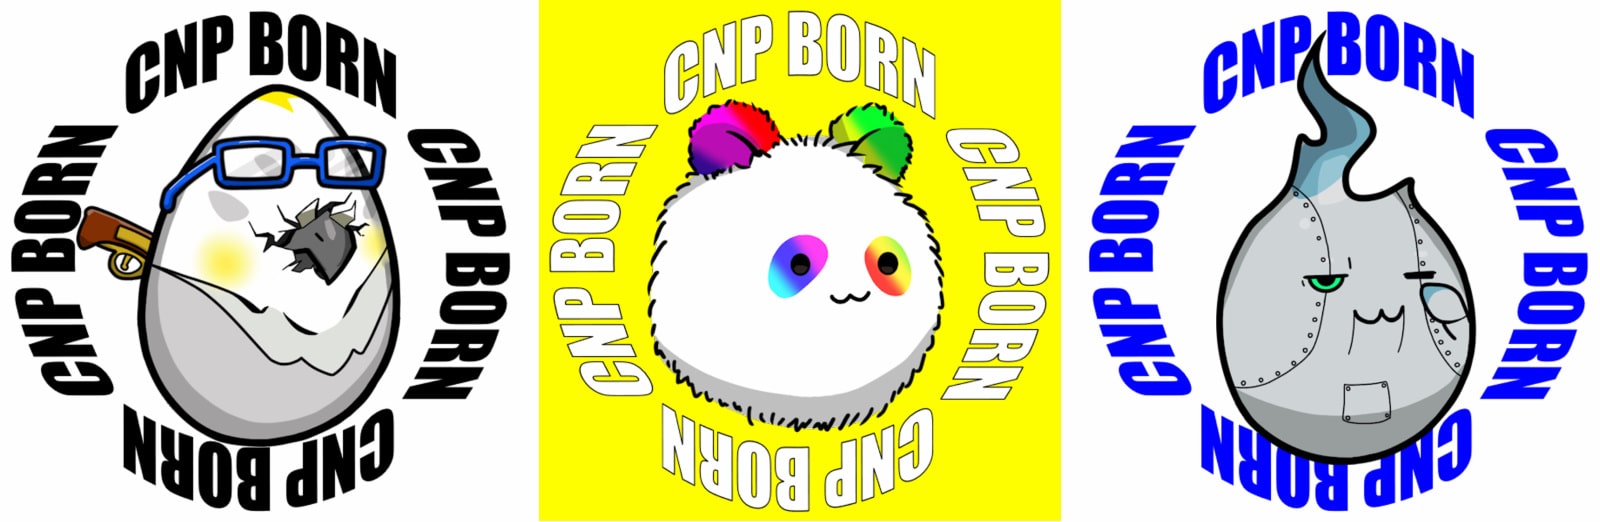 CNP Bornの画像